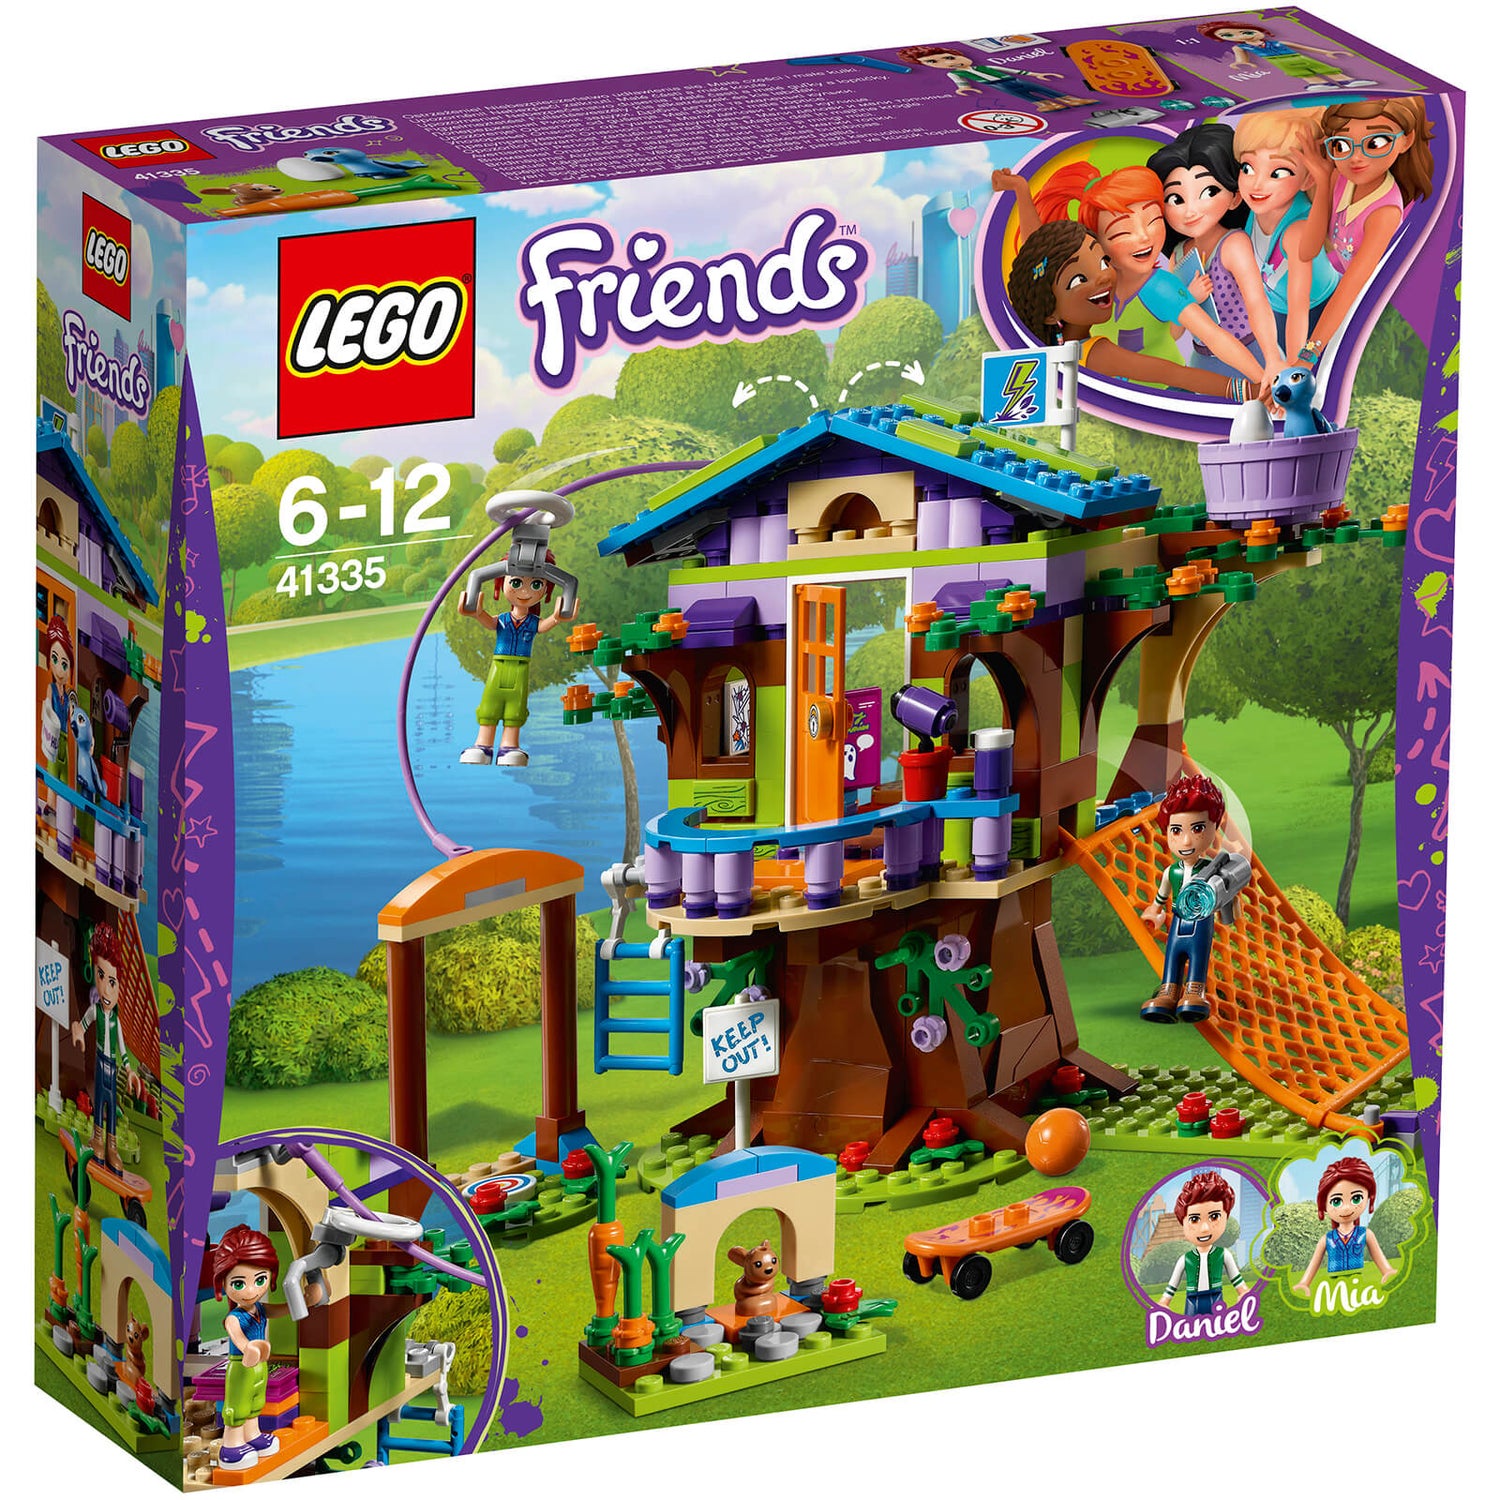 Lego Friends Mia’s Tree House Playset With Minidolls 41335 Toys Zavvi Uk